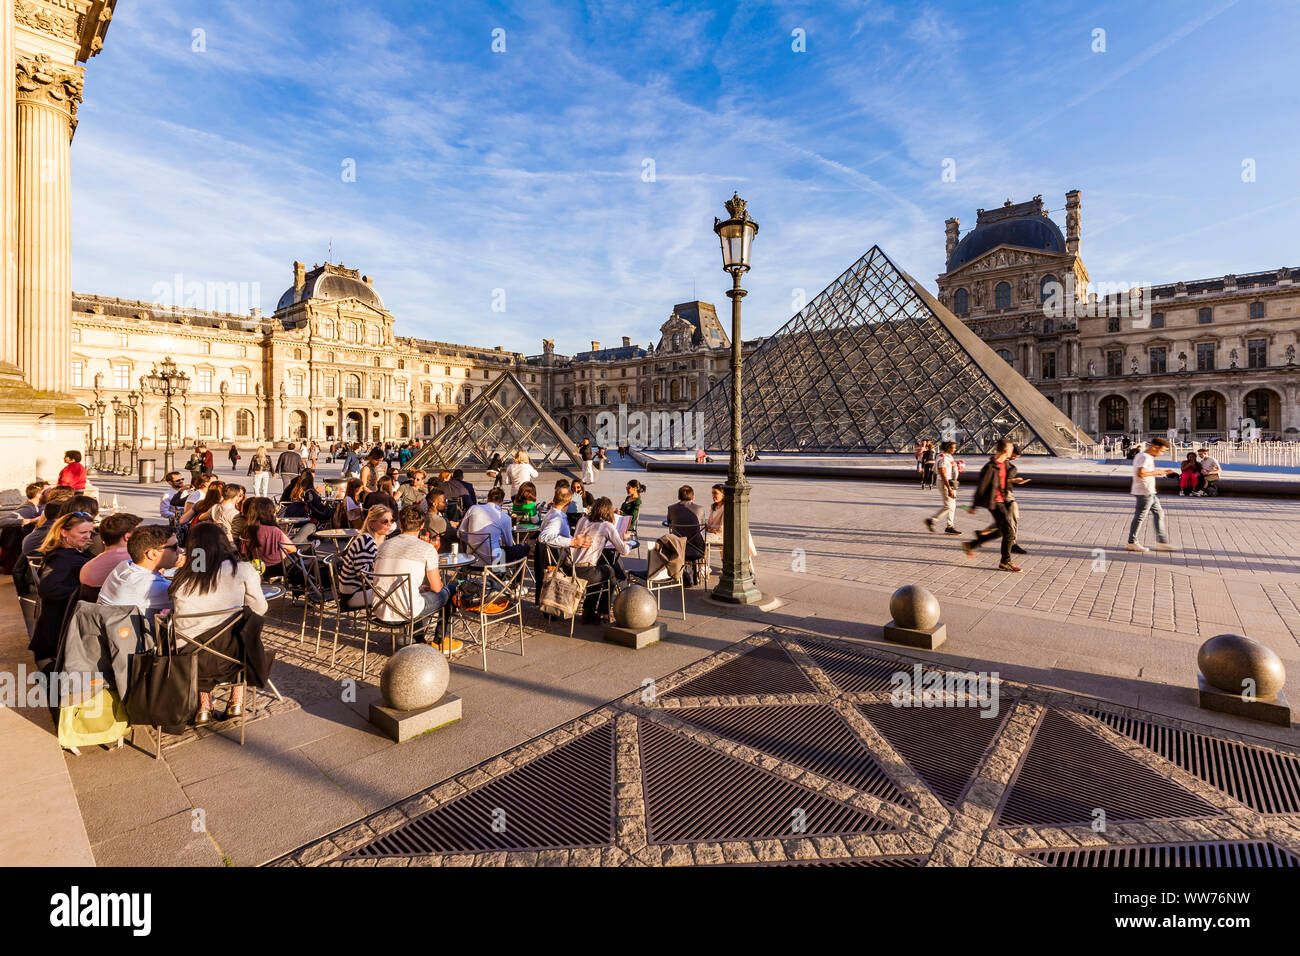 France, Paris, Louvre, MusÃ©e du Louvre, Le CafÃ© Marly Restaurant, terrace, glass pyramid Stock Photo